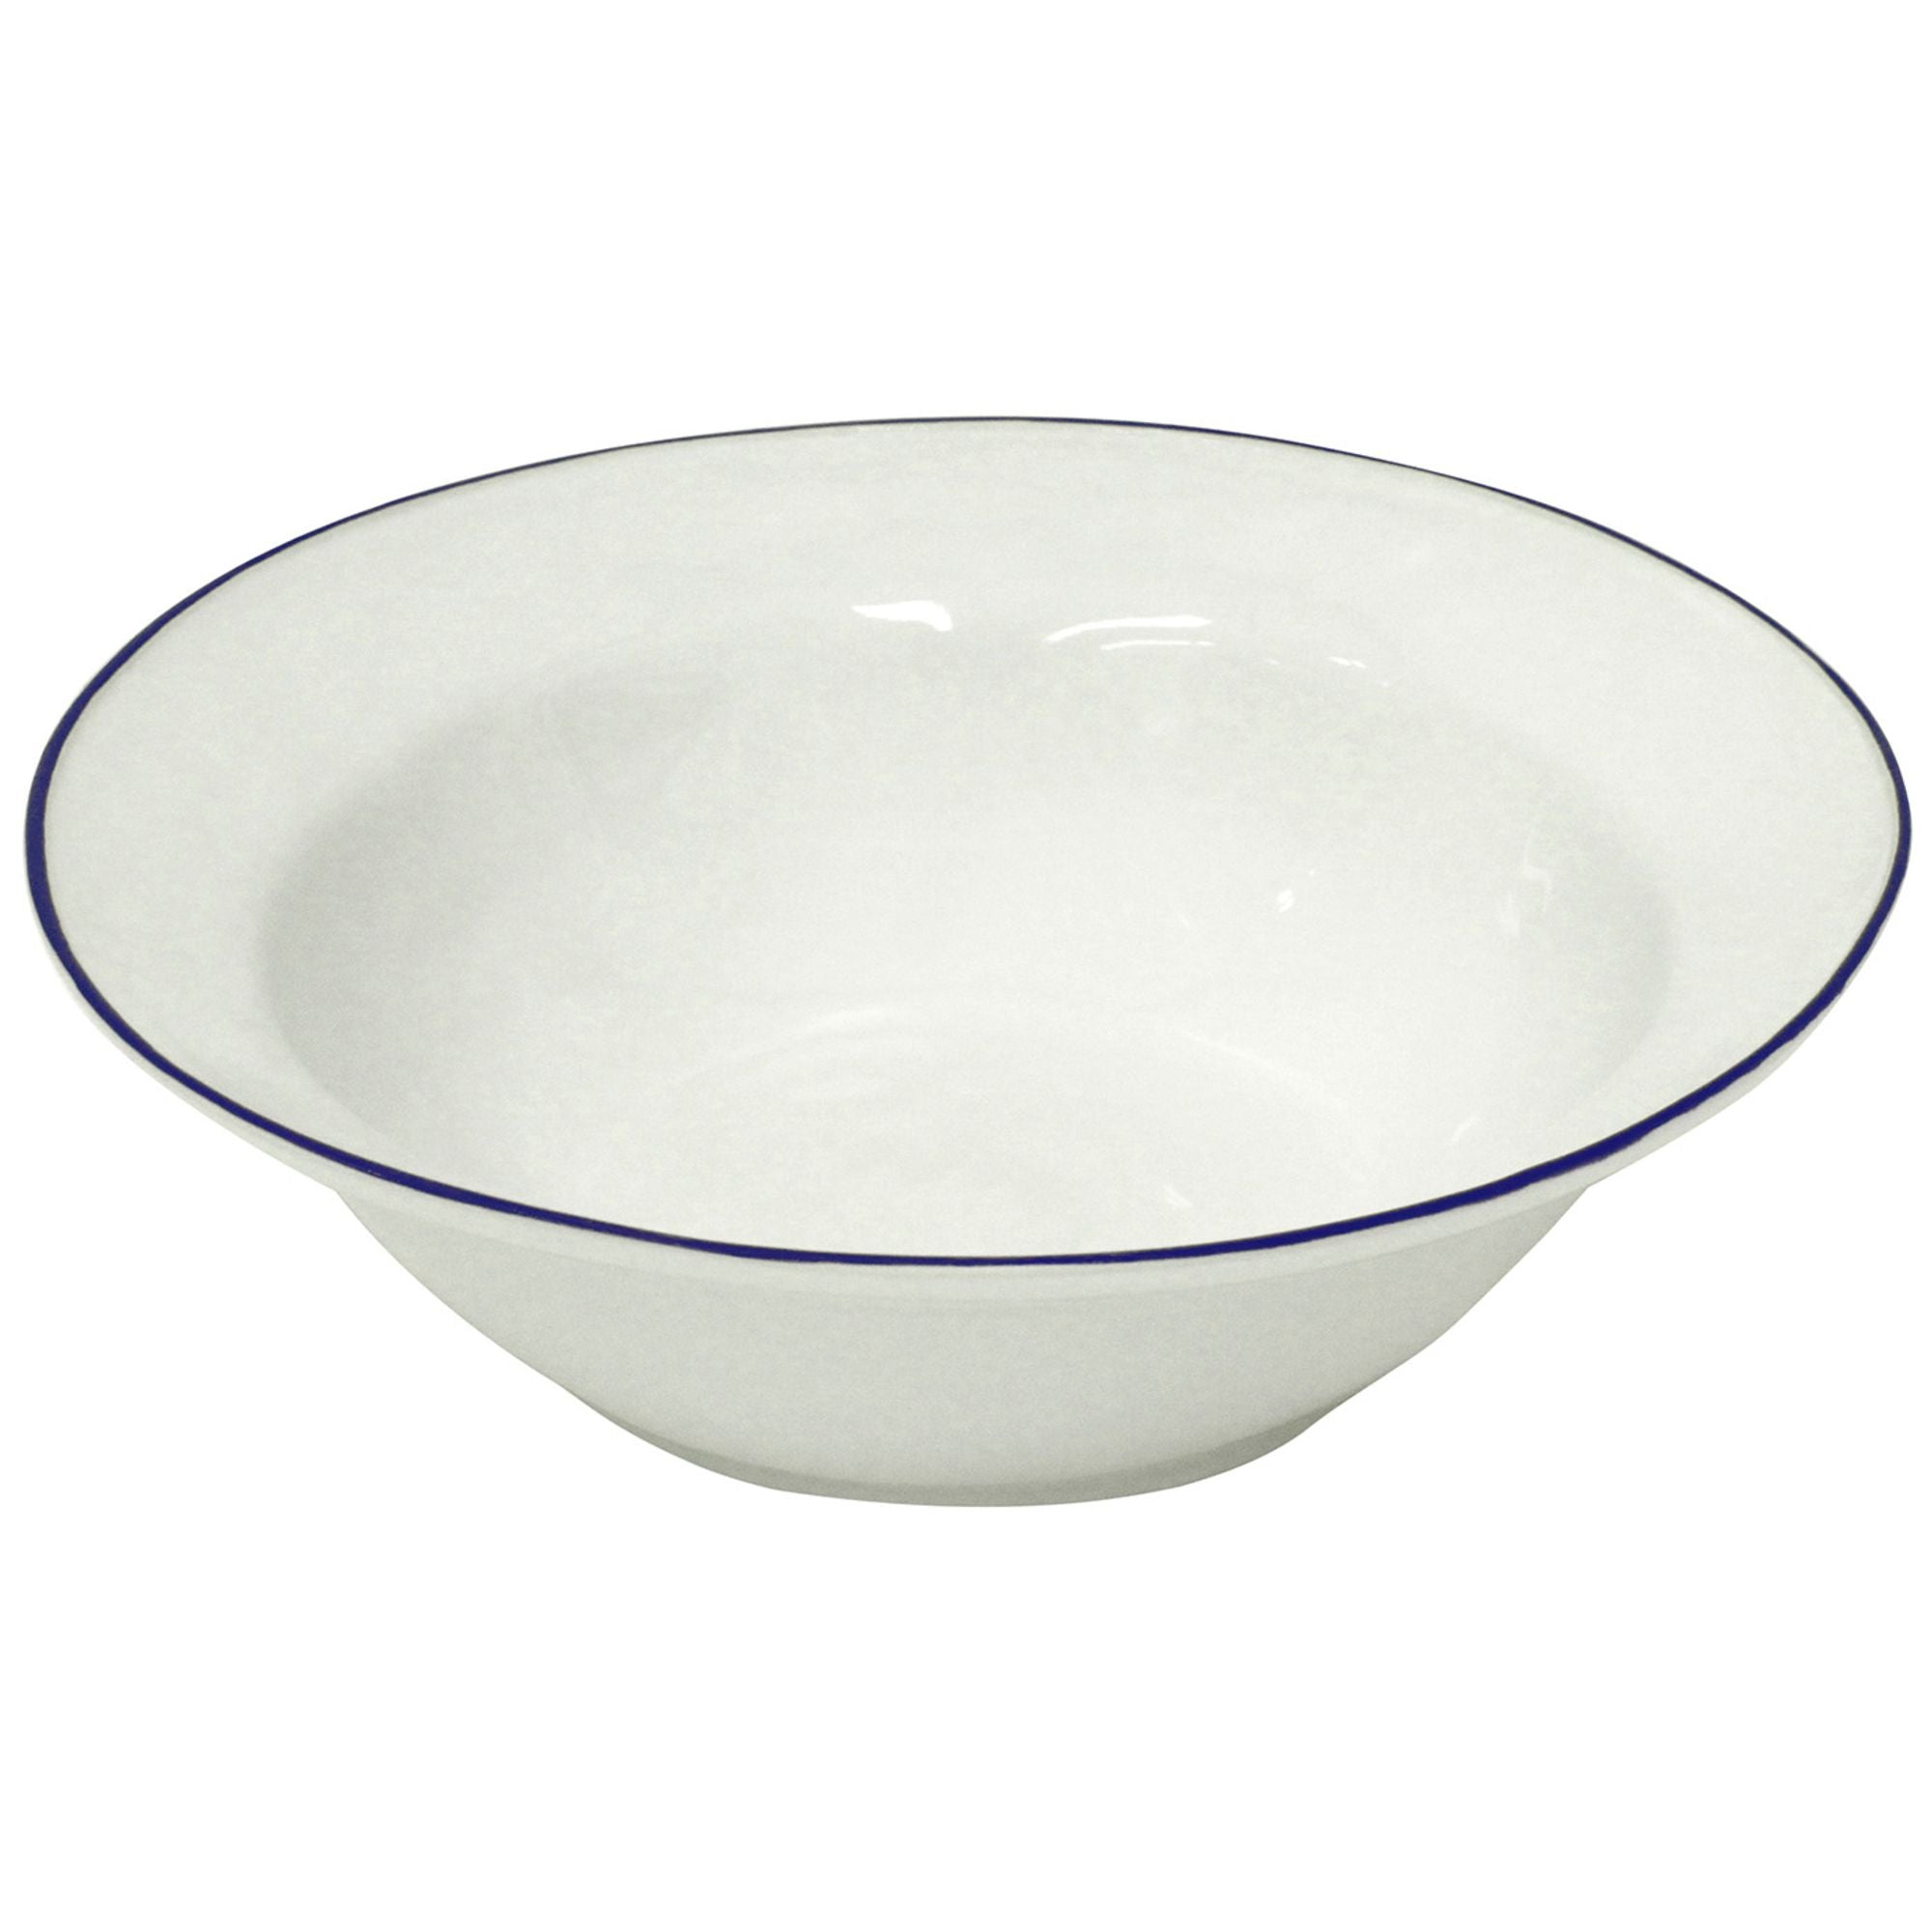 Beja Serving Bowl 12" White-Blue